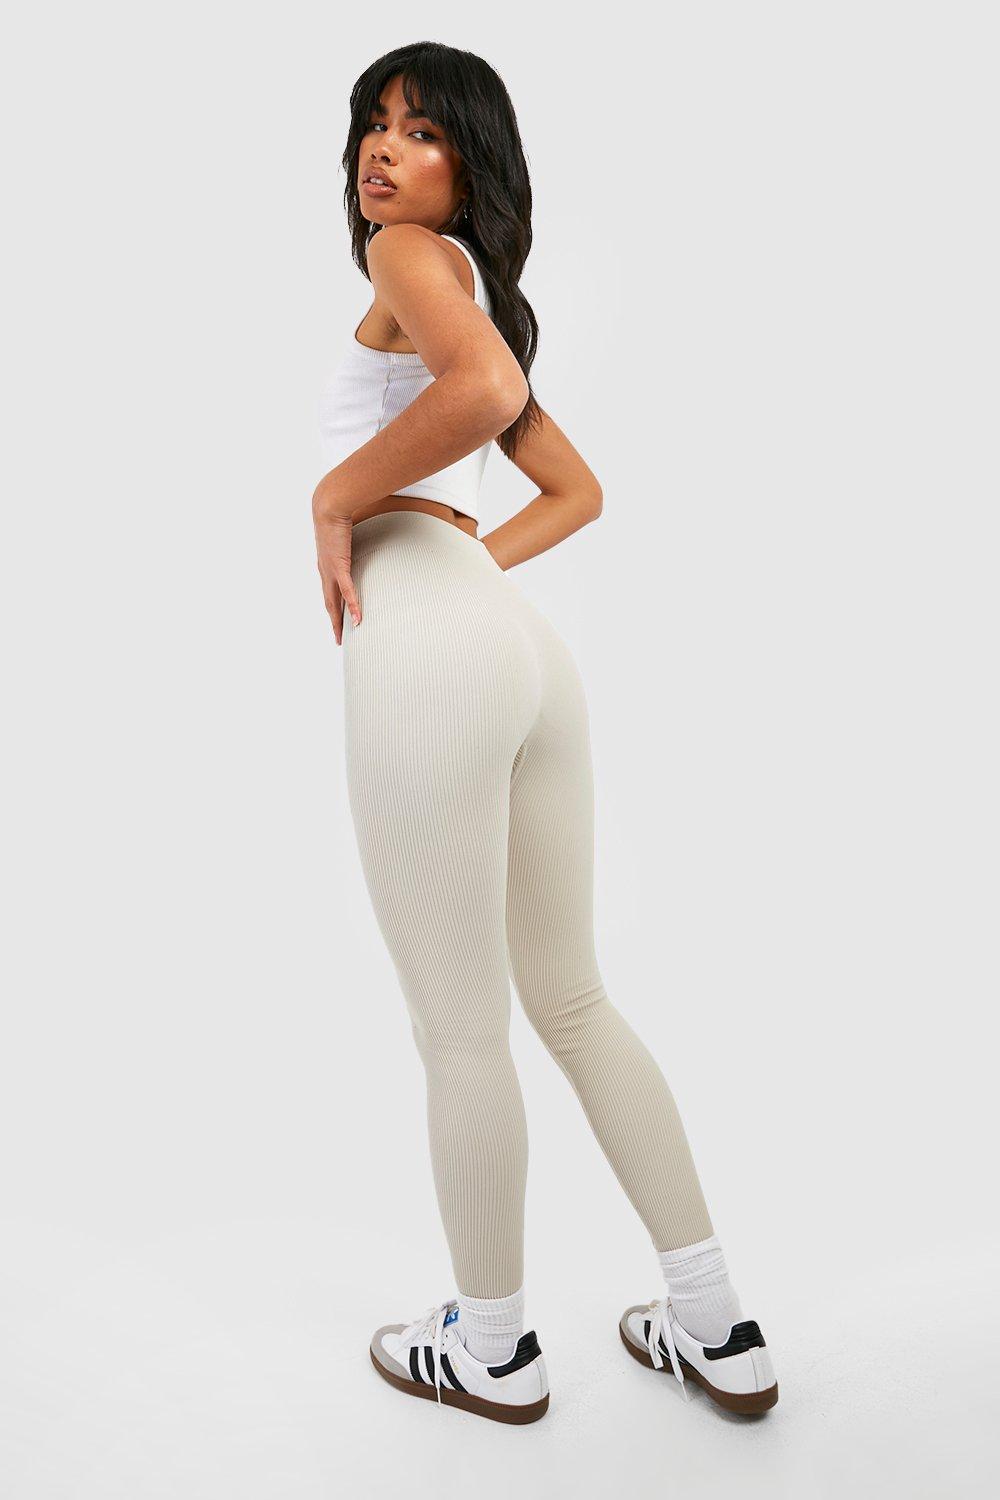 Yoga Basic Conjunto deportivo inconsútil tejido de canalé, Moda de Mujer